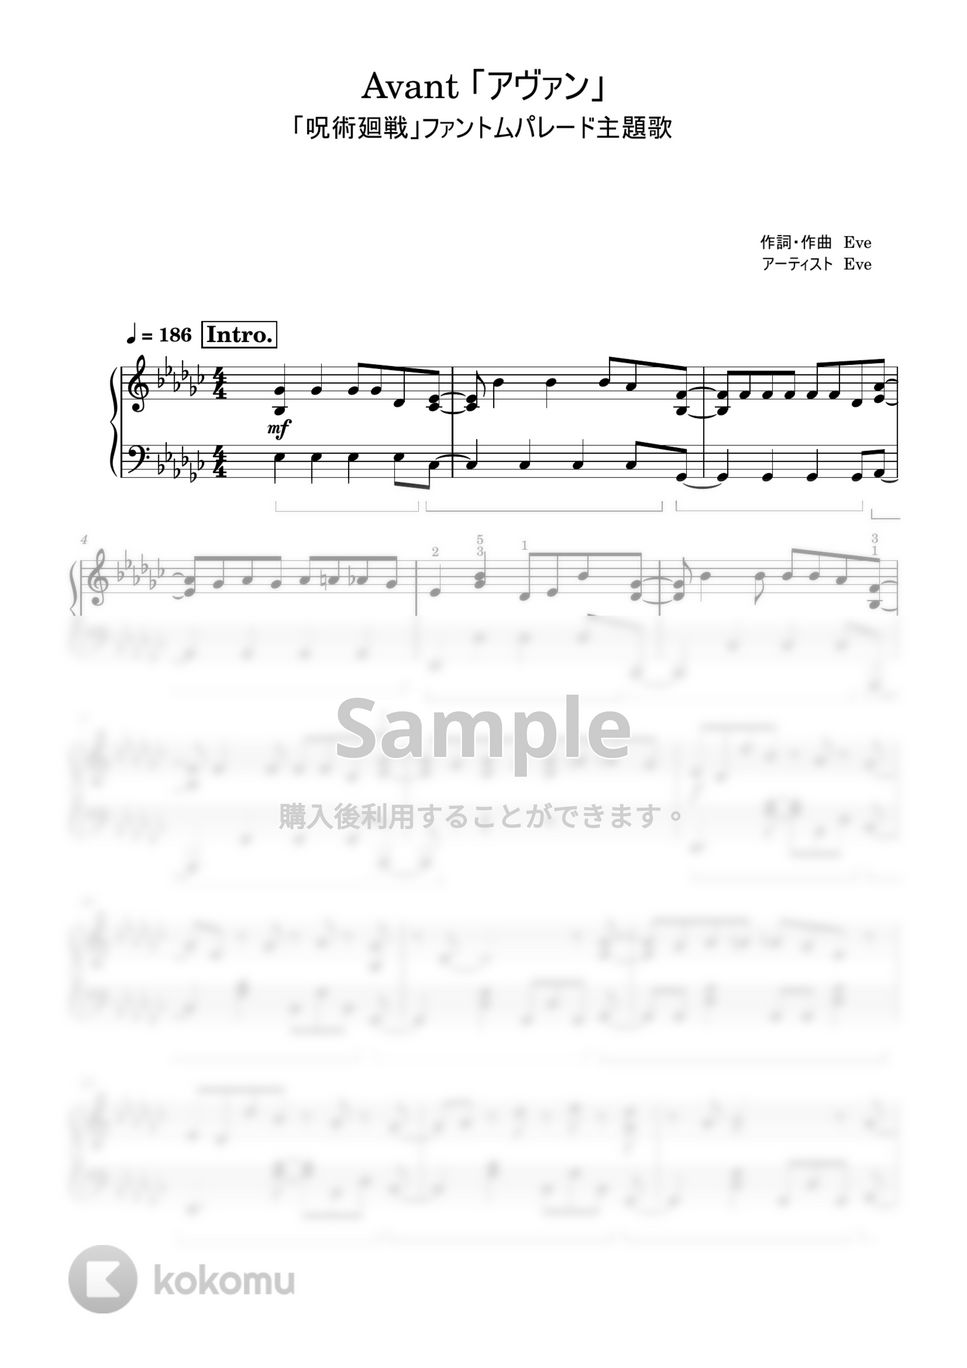 「呪術廻戦」ファントムパレード - アヴァン (中級レベル) by Saori8Piano